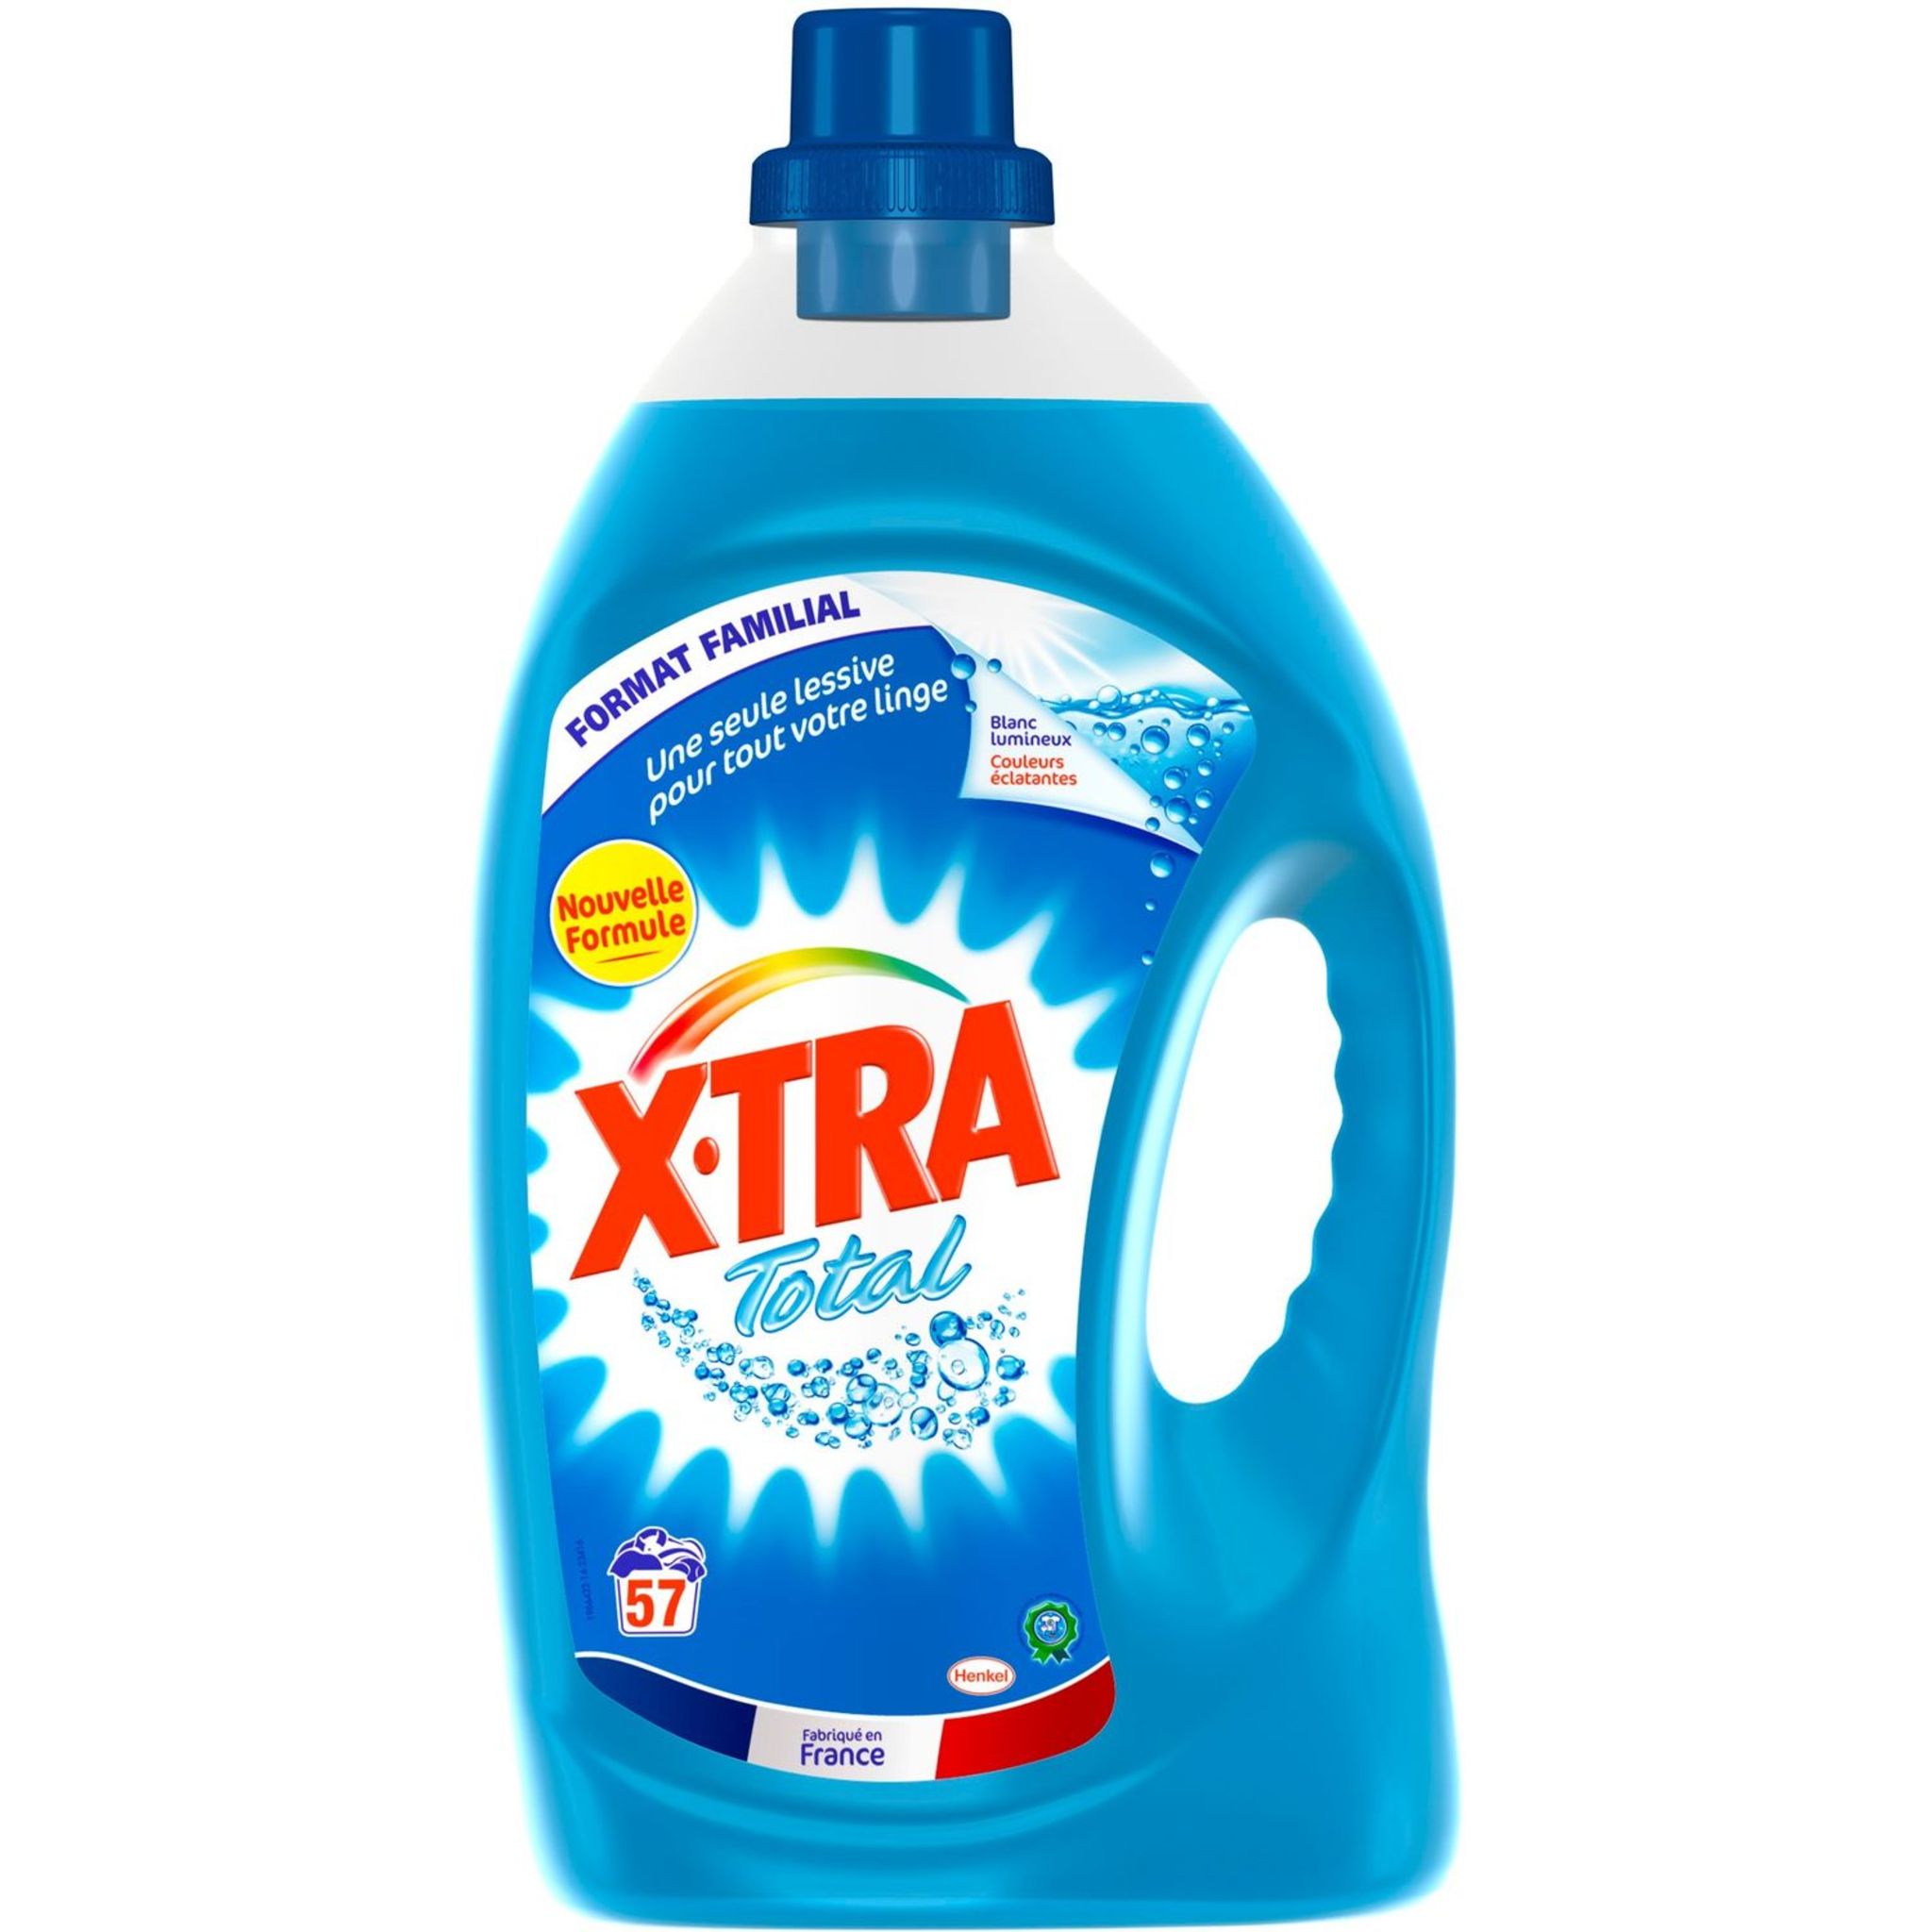 X-TRA Xtra lessive diluée total lavage x57 - 4l pas cher 